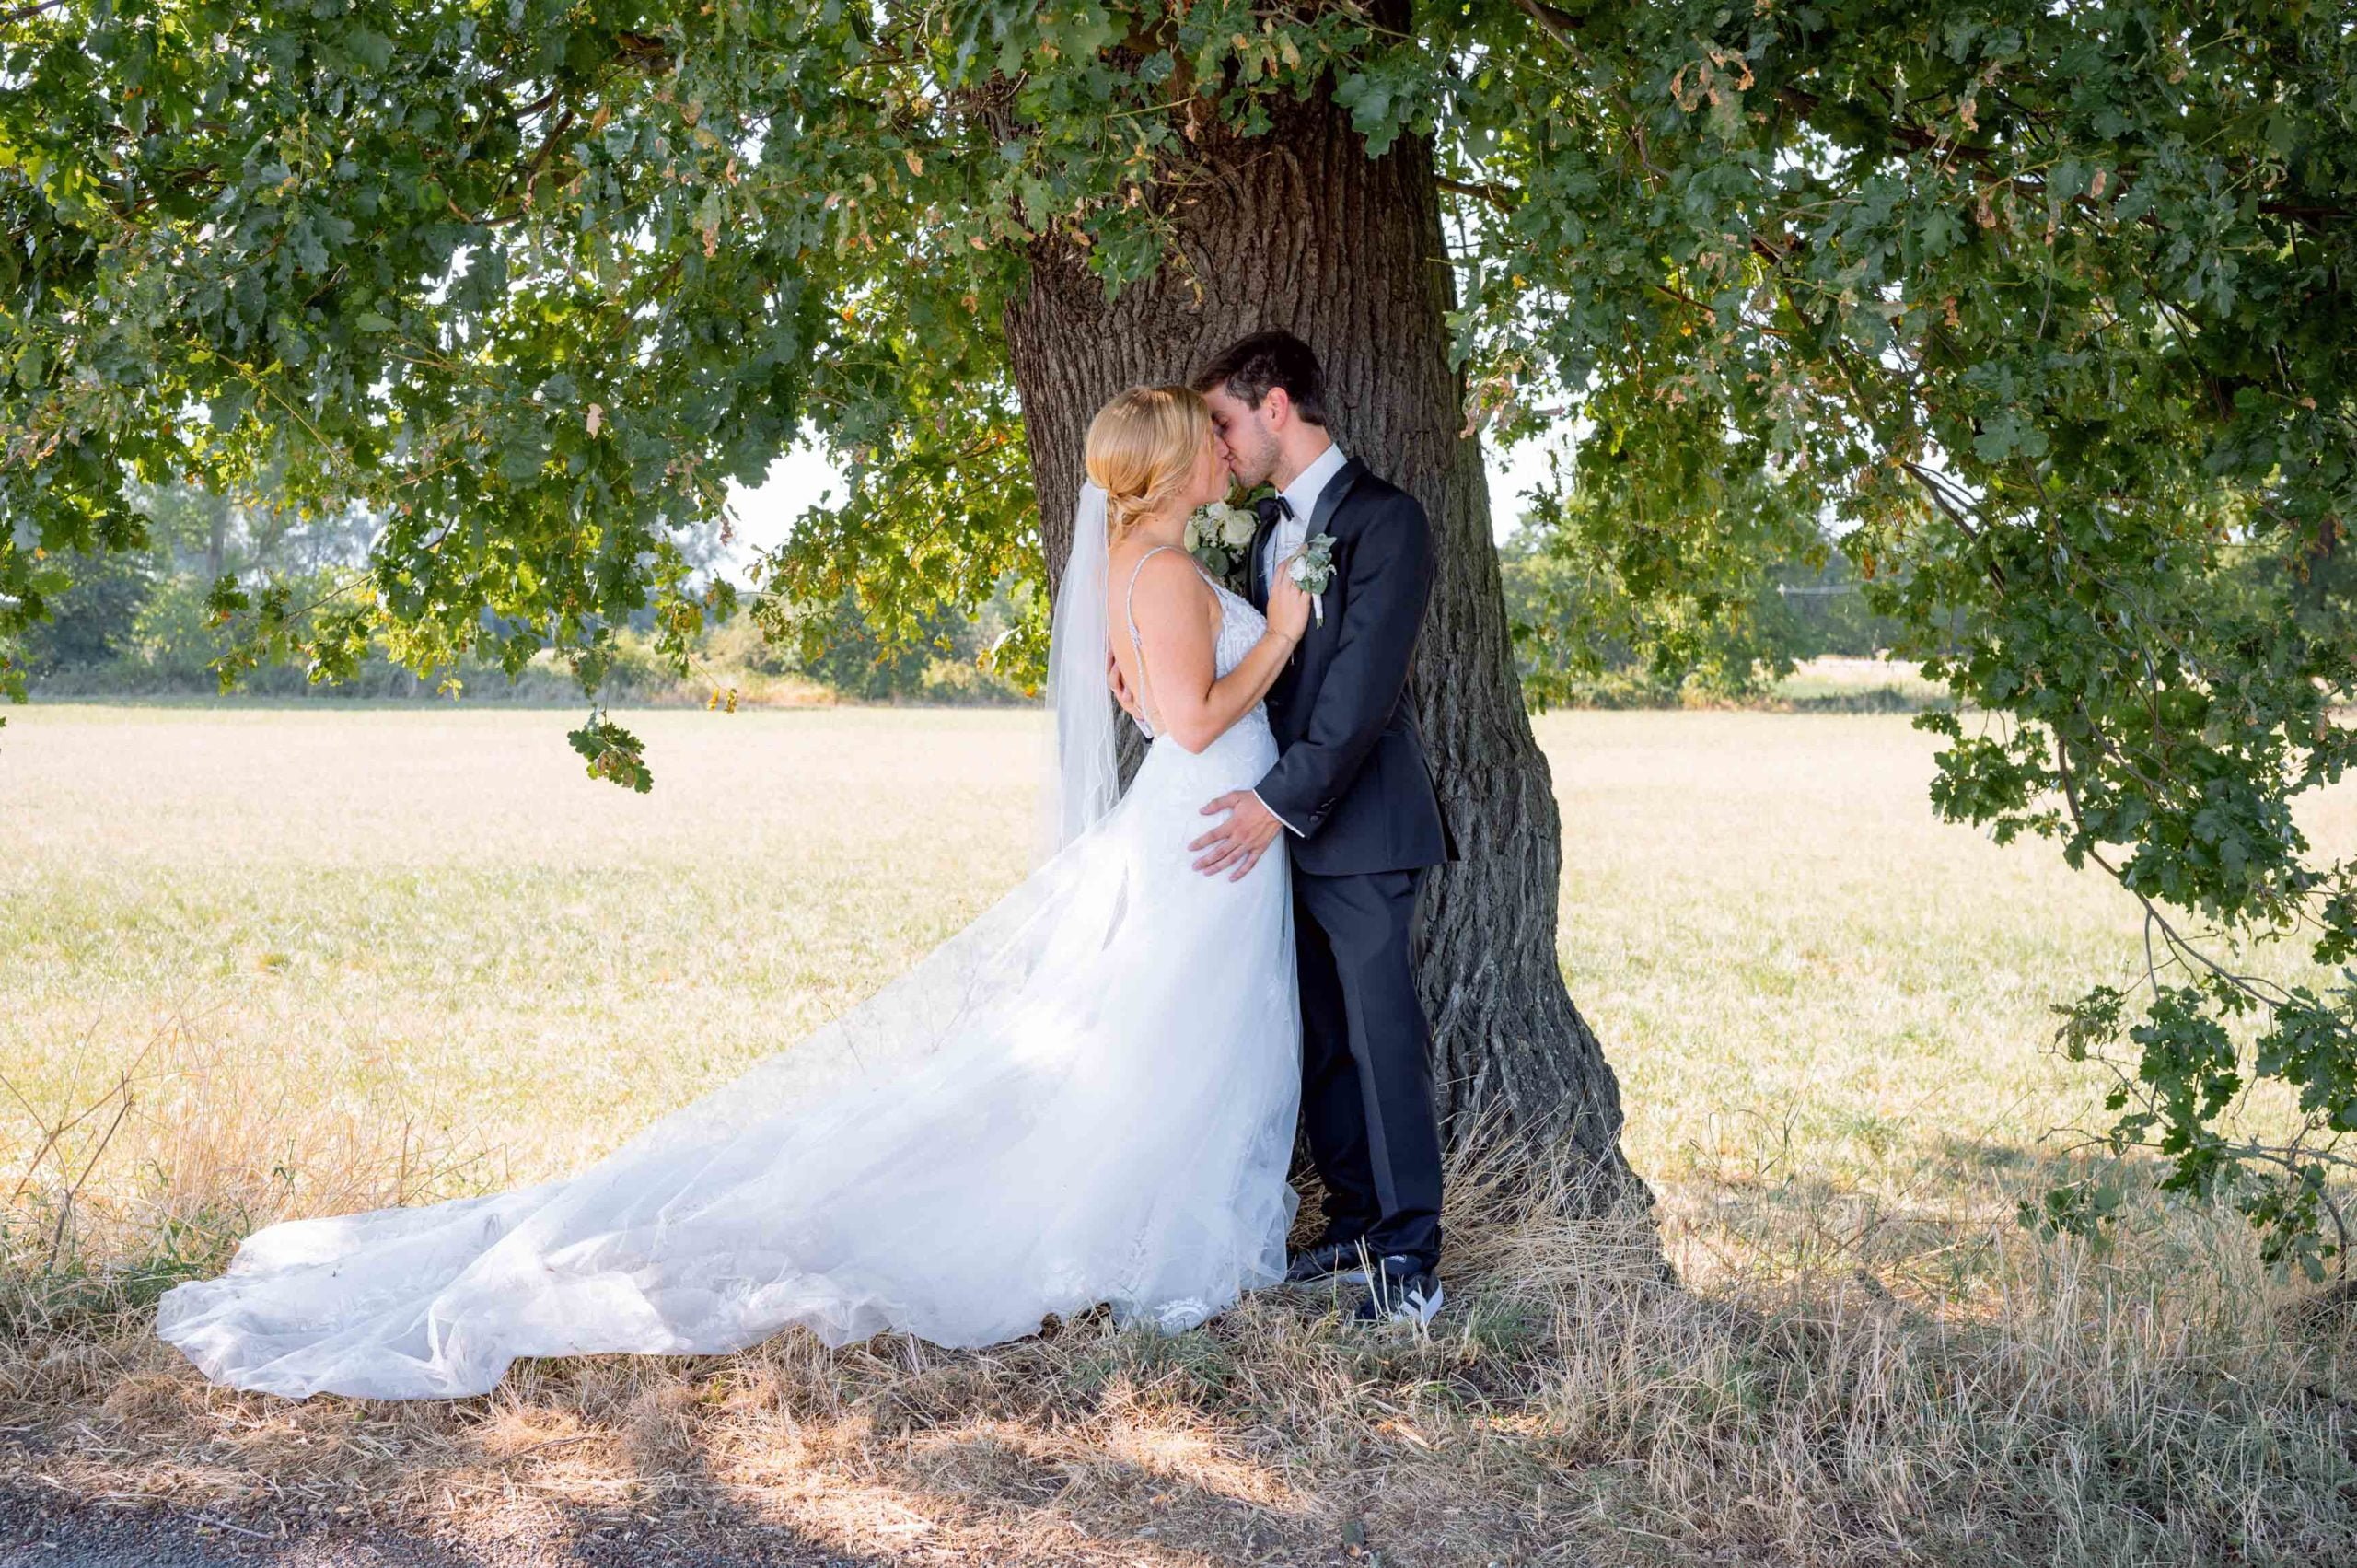 Hochzeitsfotoshooting unter einem Baum in der Natur.